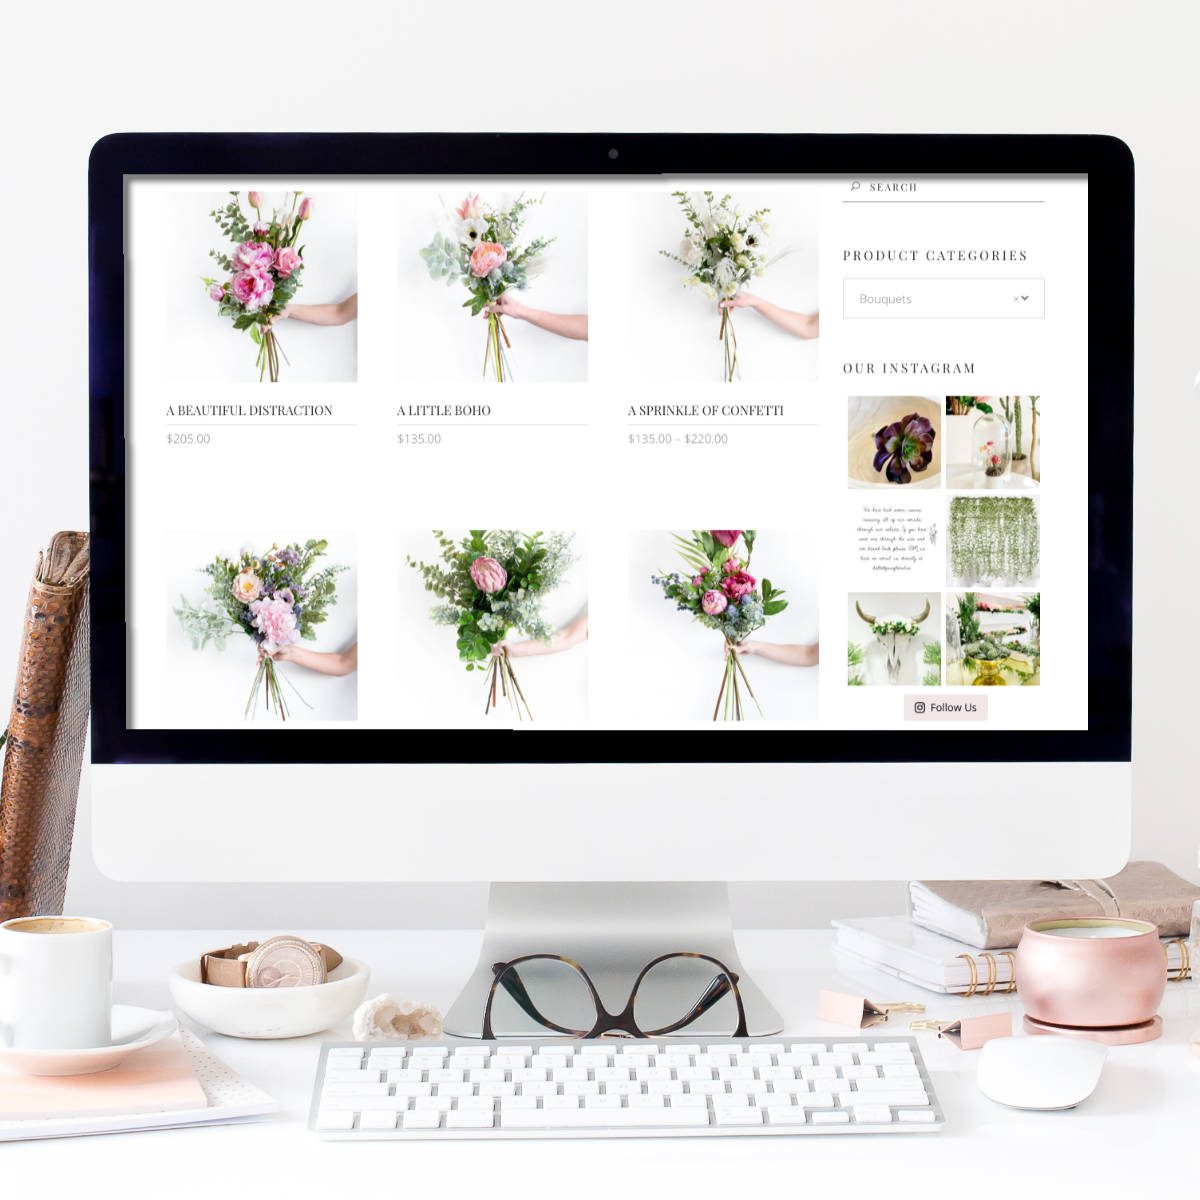 Oliver-Spence-Creative Website Design Faux Floral 3